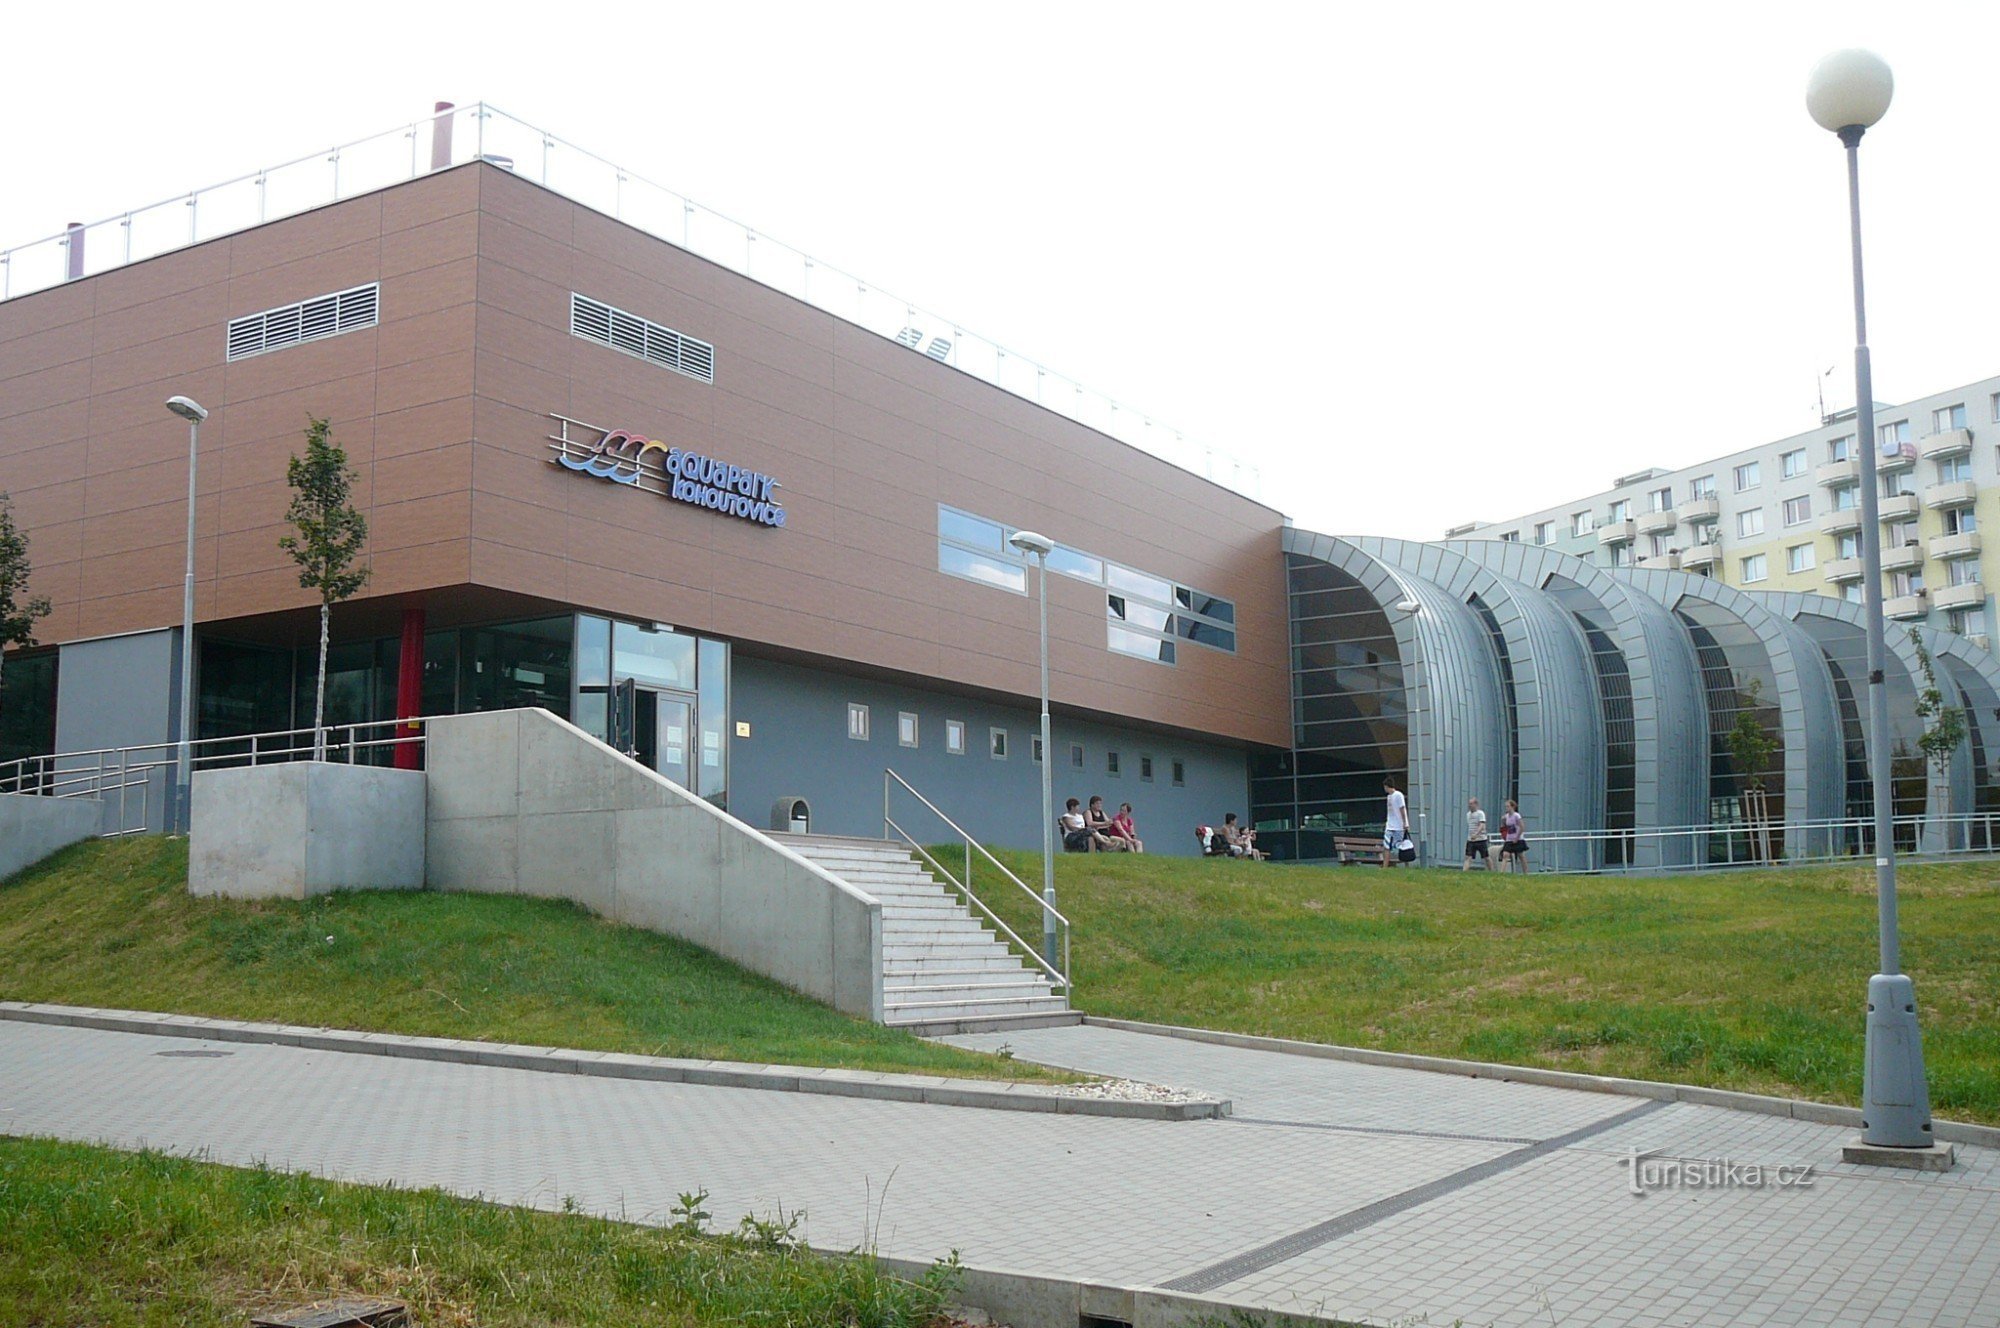 Aquapark building